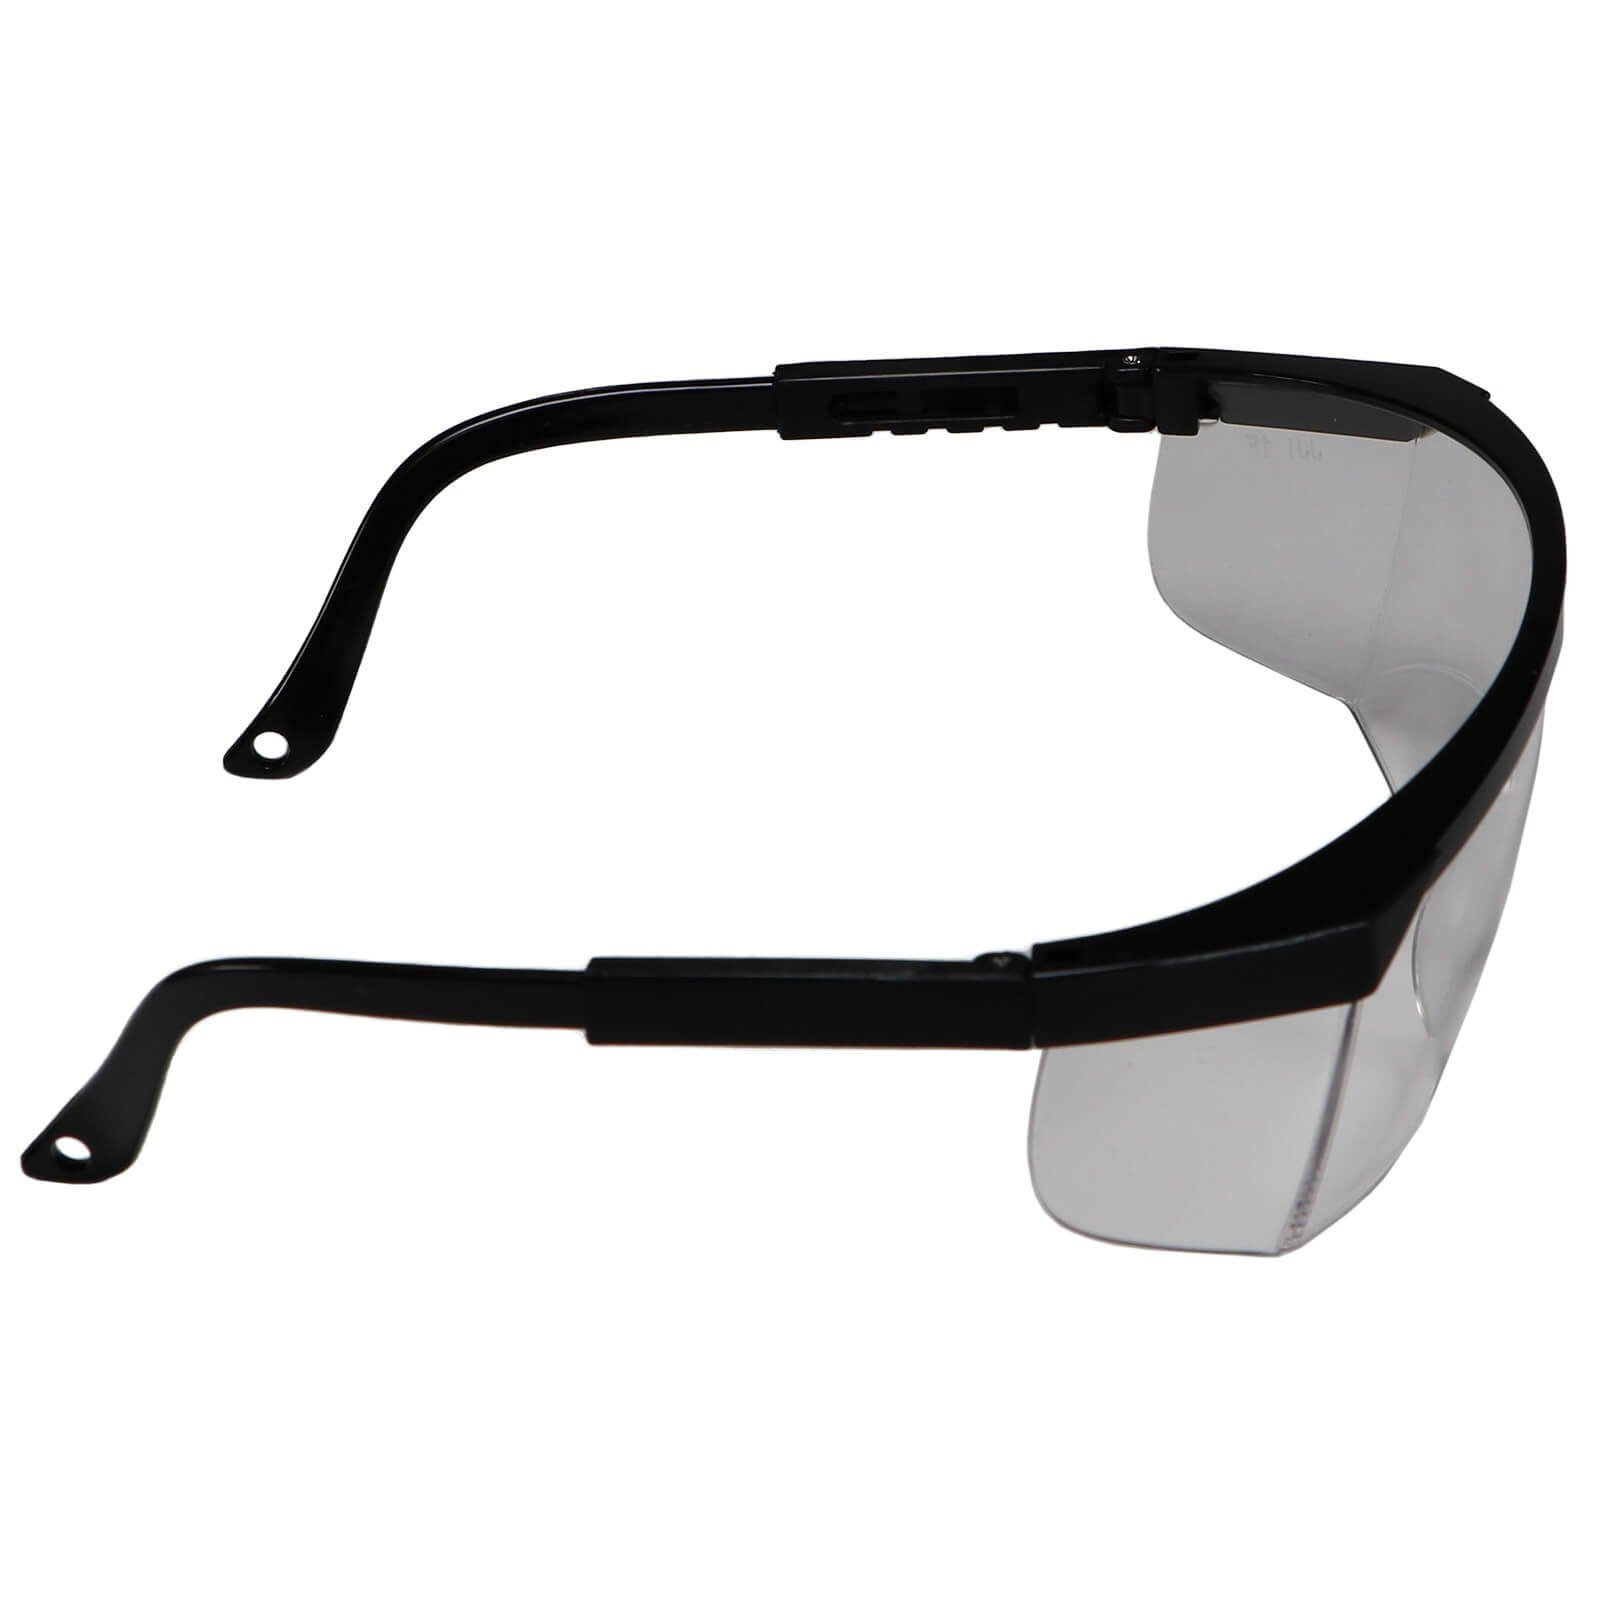 farblos EN166 Arbeitsschutzbrille Schutzbrille Arbeitsbrille 2er Set Beast Vollsicht